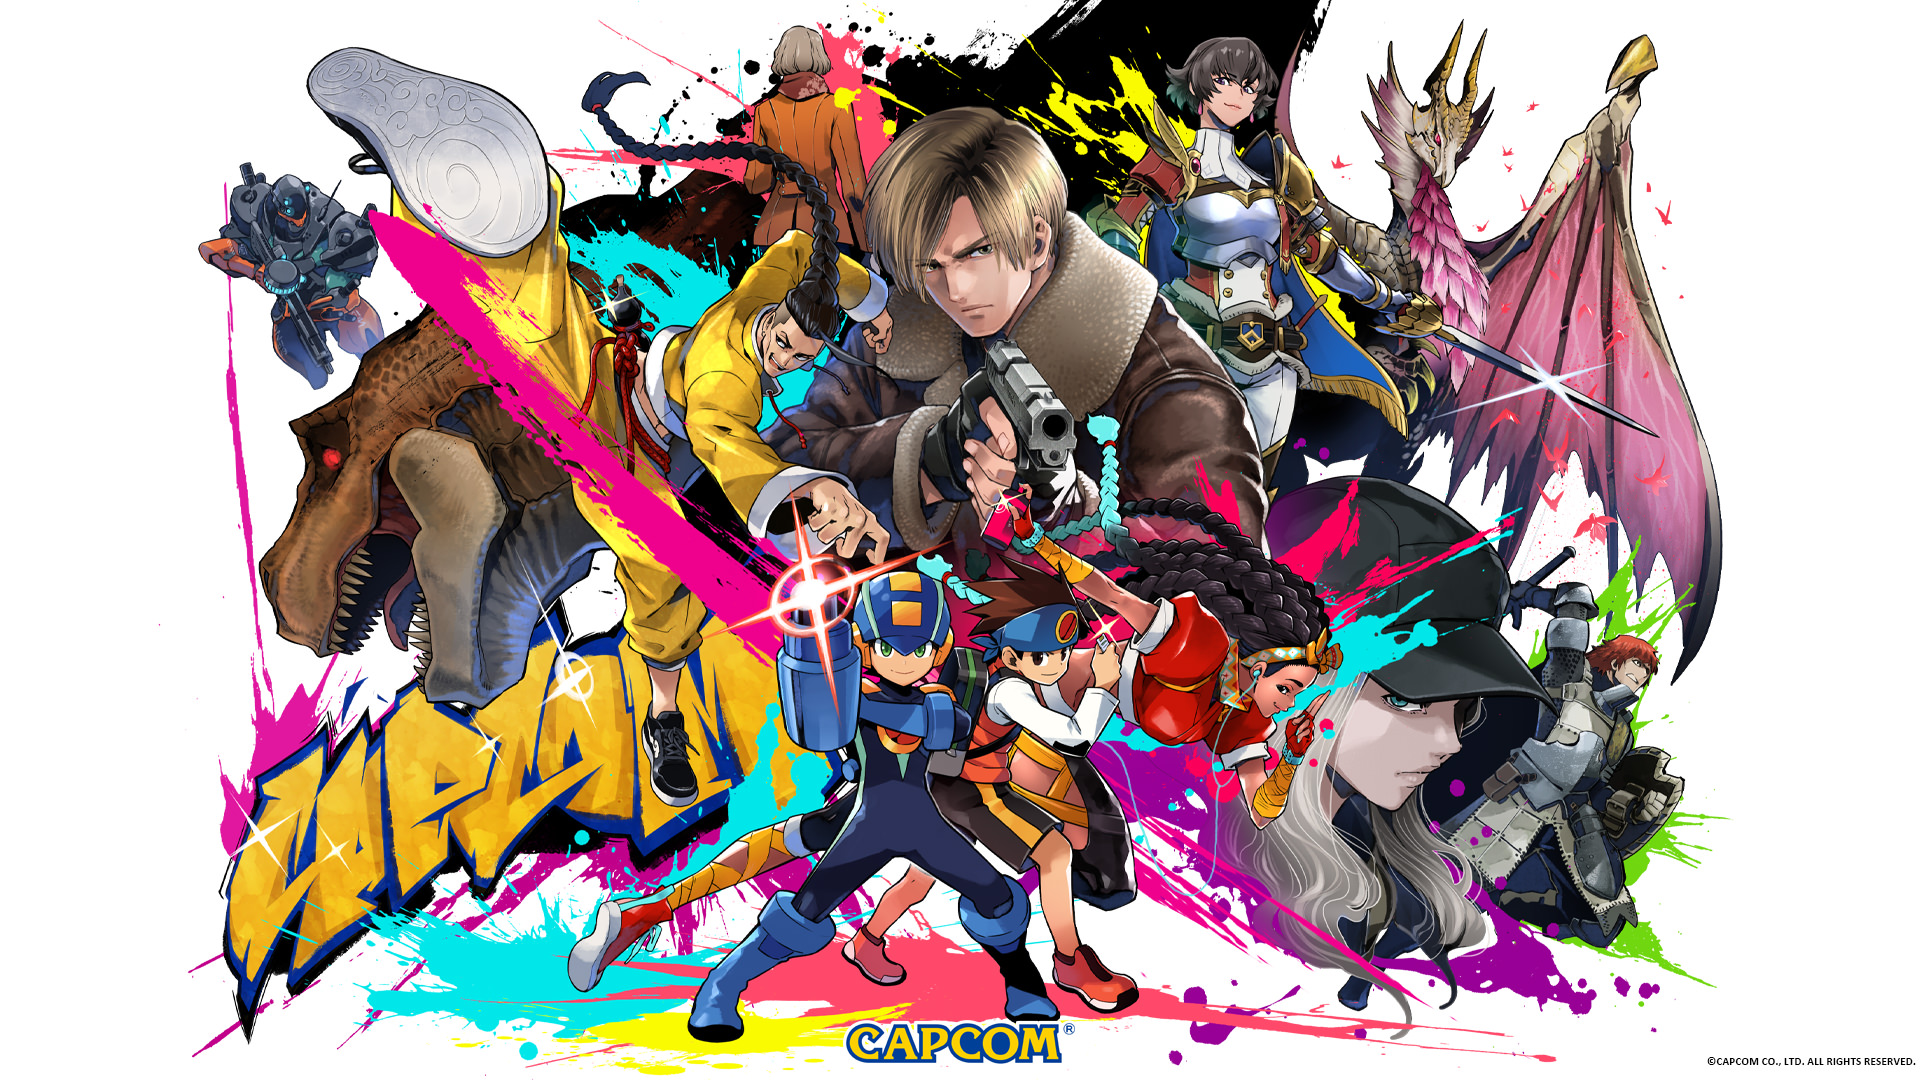 تصاویر پس زمینه شخصیت های مختلف Capcom در نظرسنجی پایان سال 2022